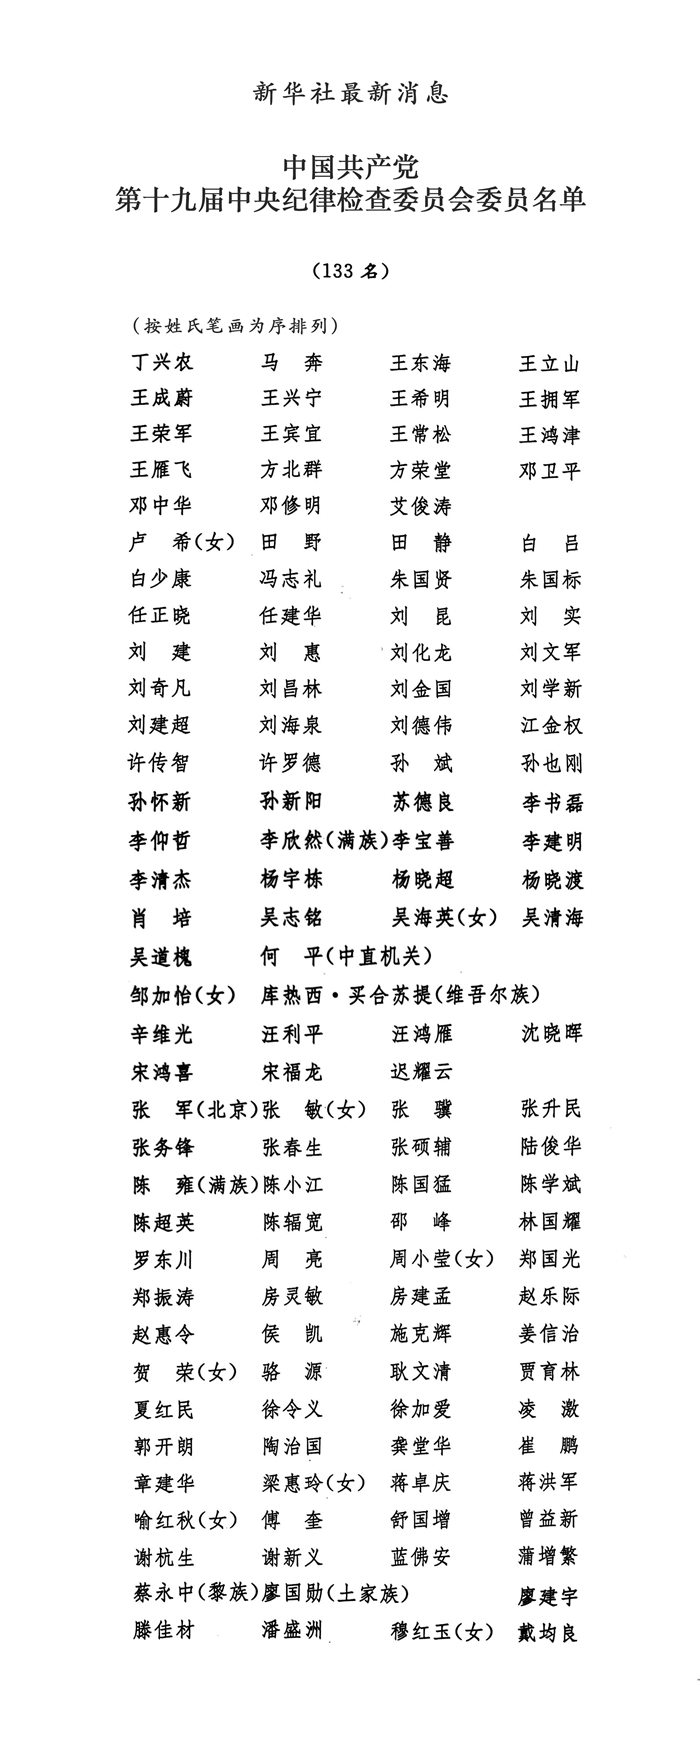 中国共产党第十九届中央纪律检查委员会委员名单